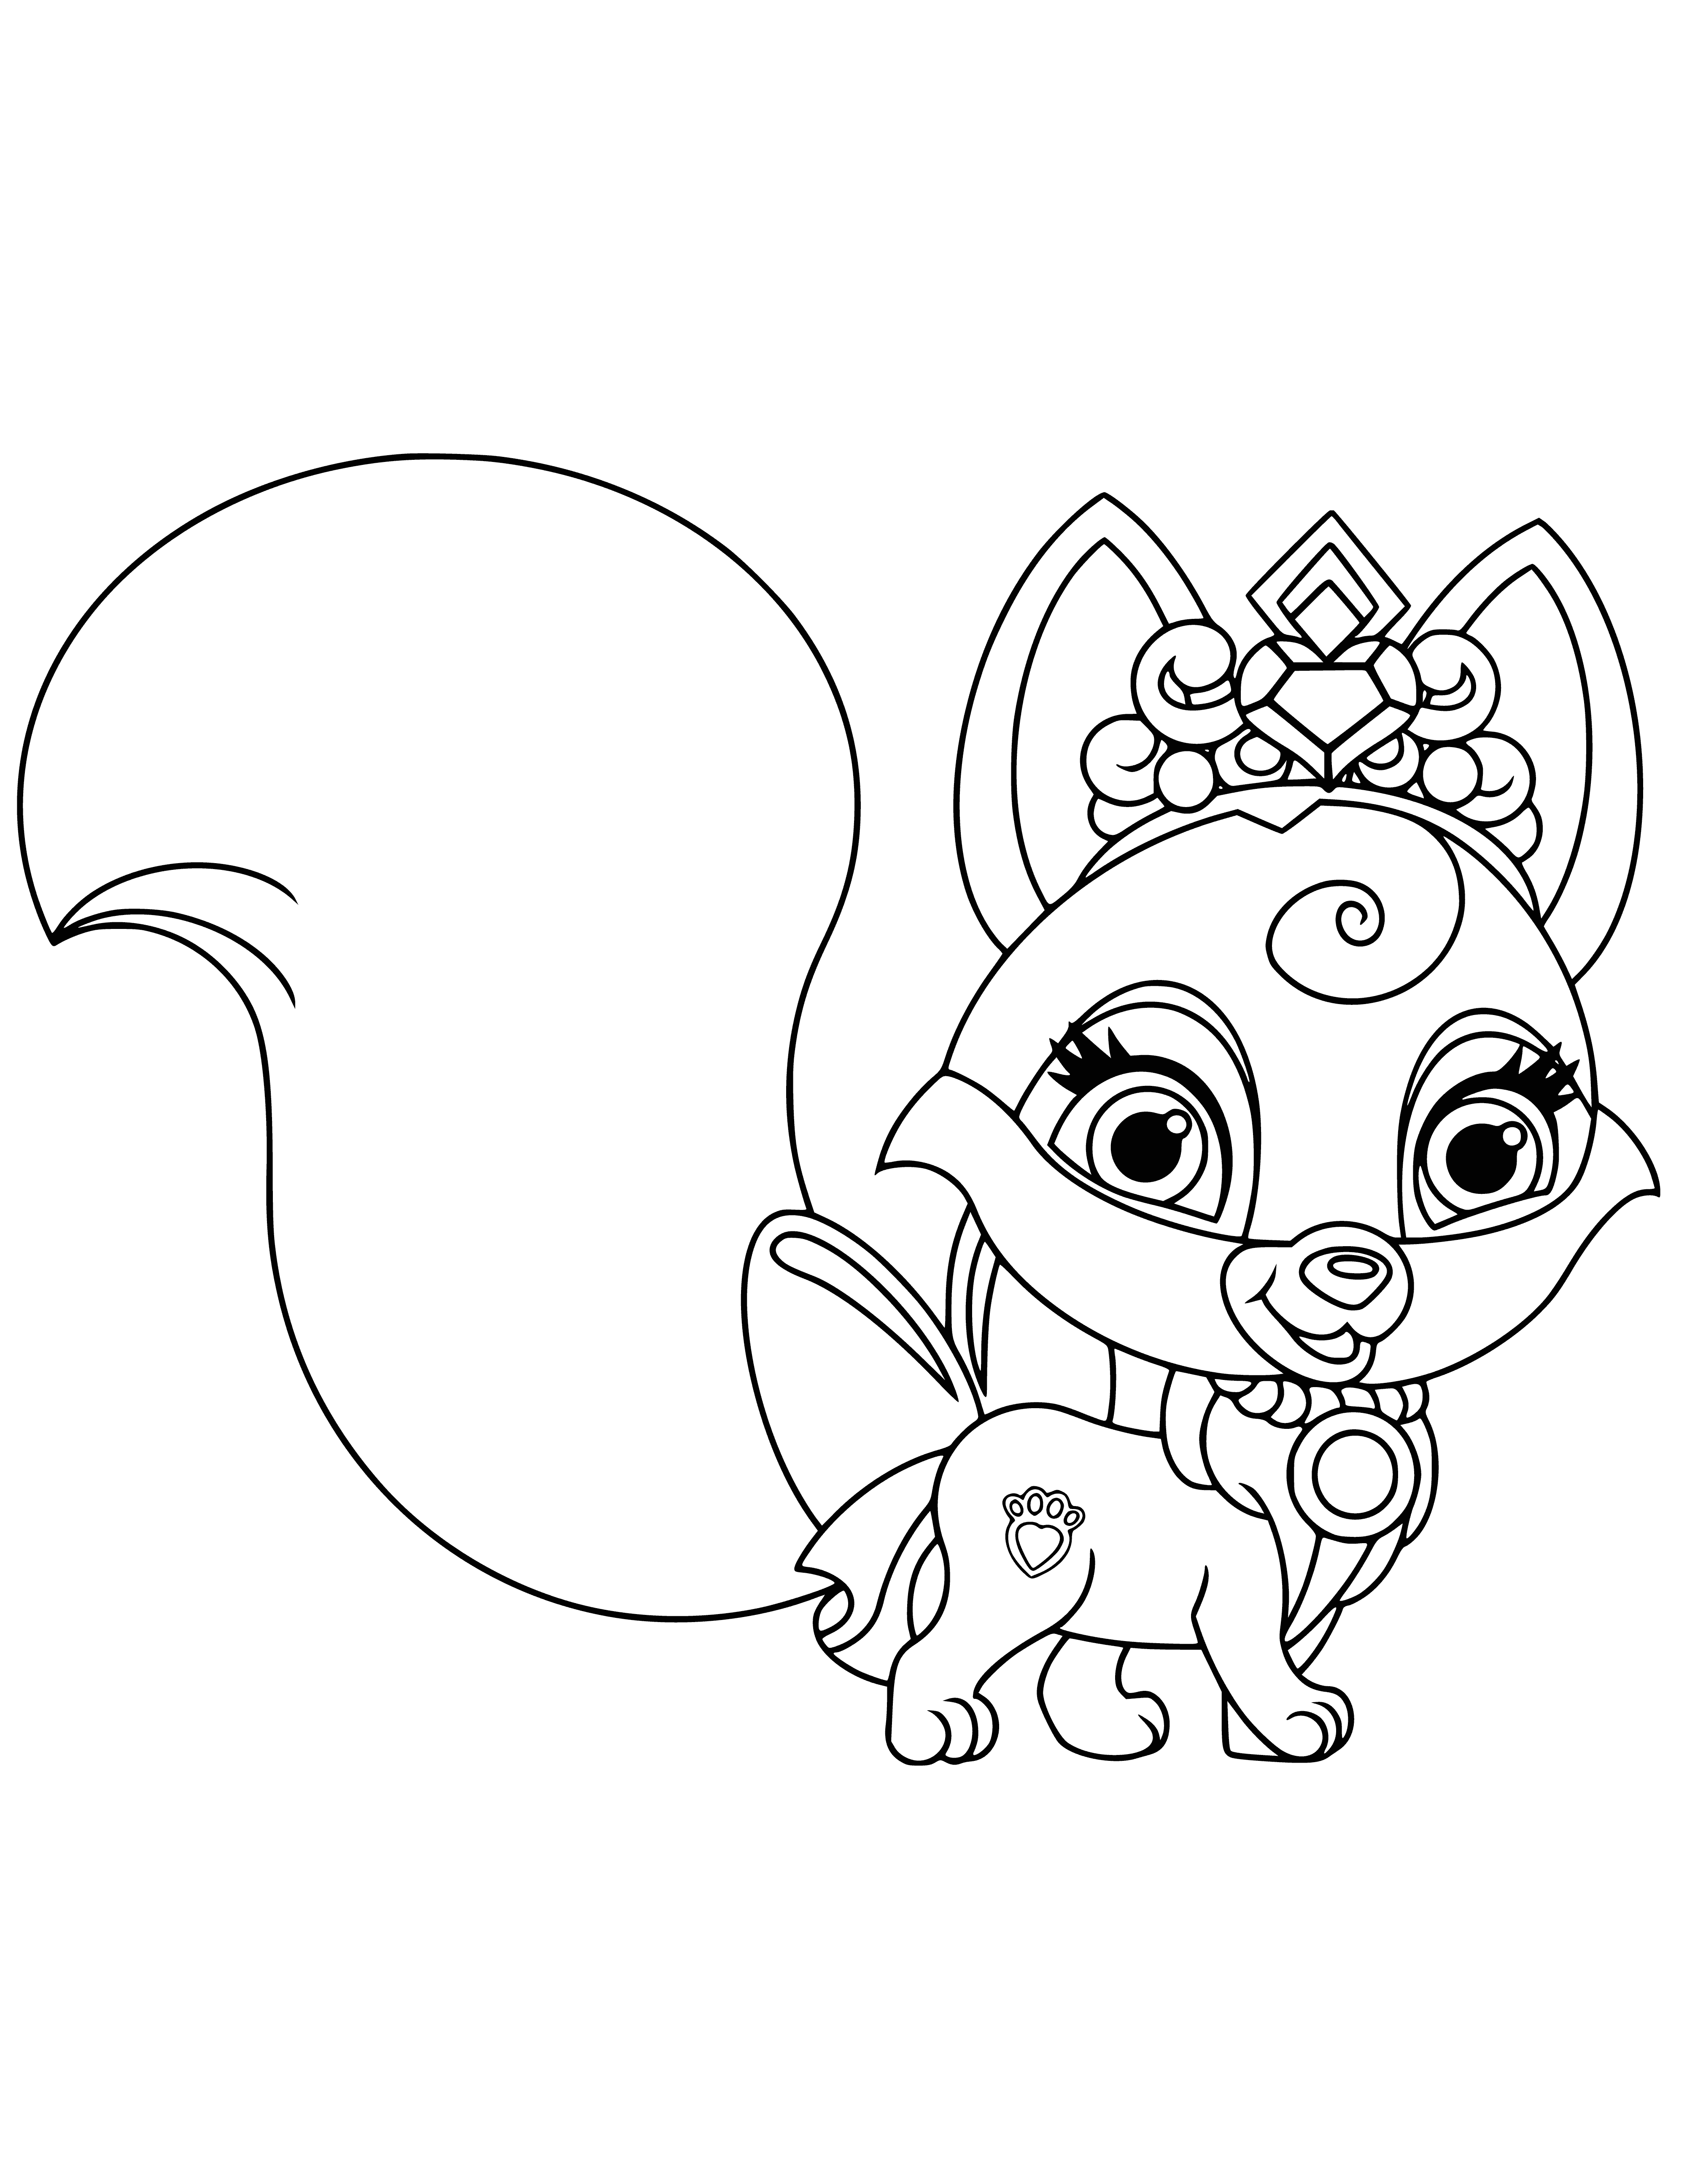 Little fox Vostrushka. Aurora's pet coloring page